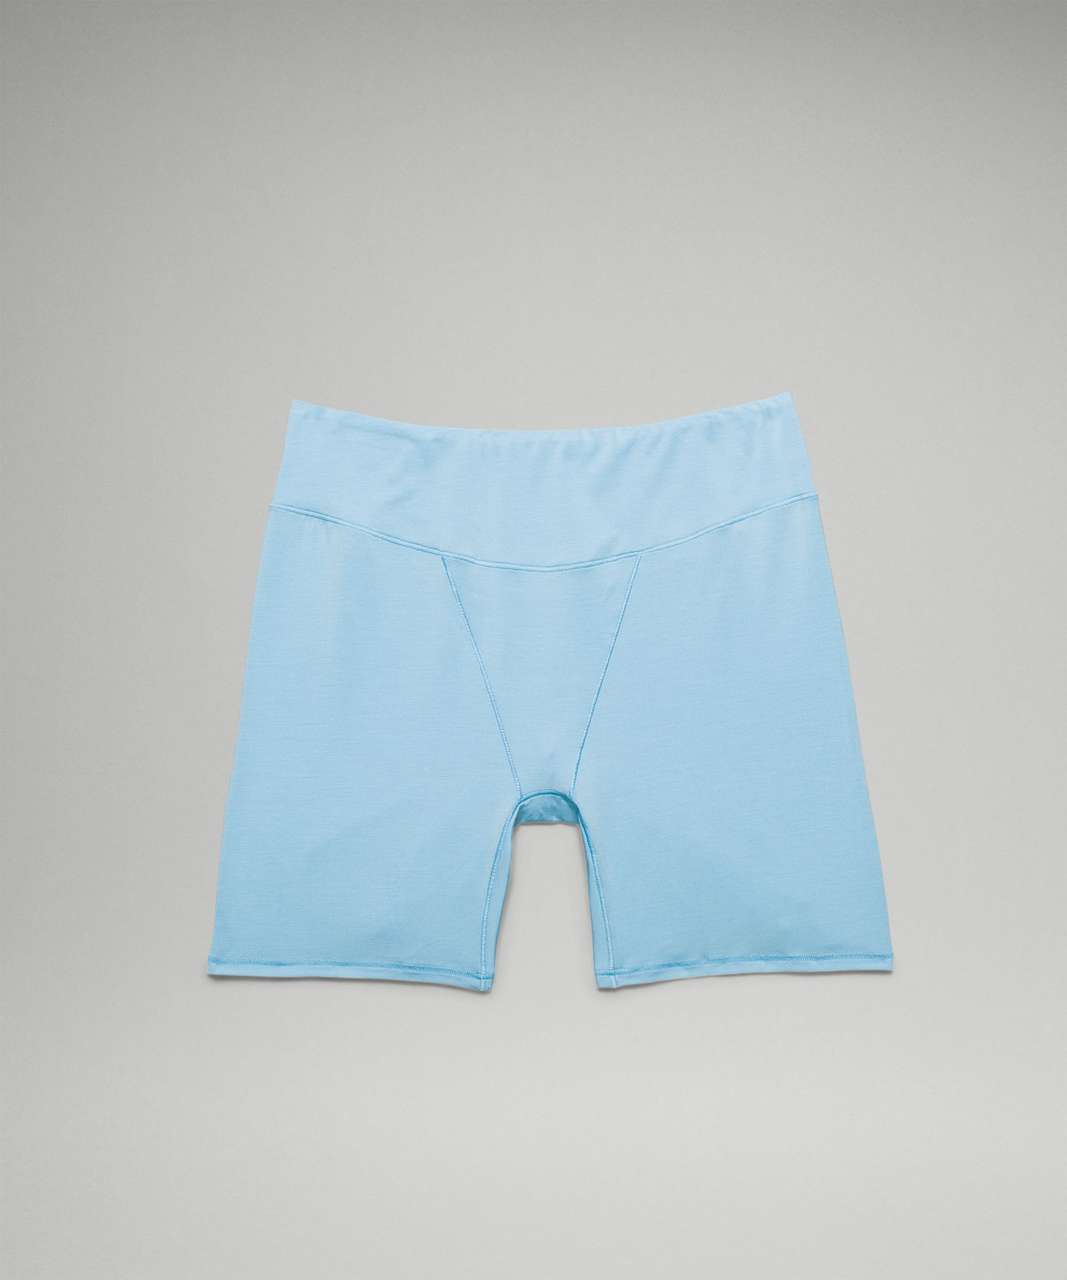 Lululemon UnderEase Super-High-Rise Shortie Underwear 5" - Blue Chill